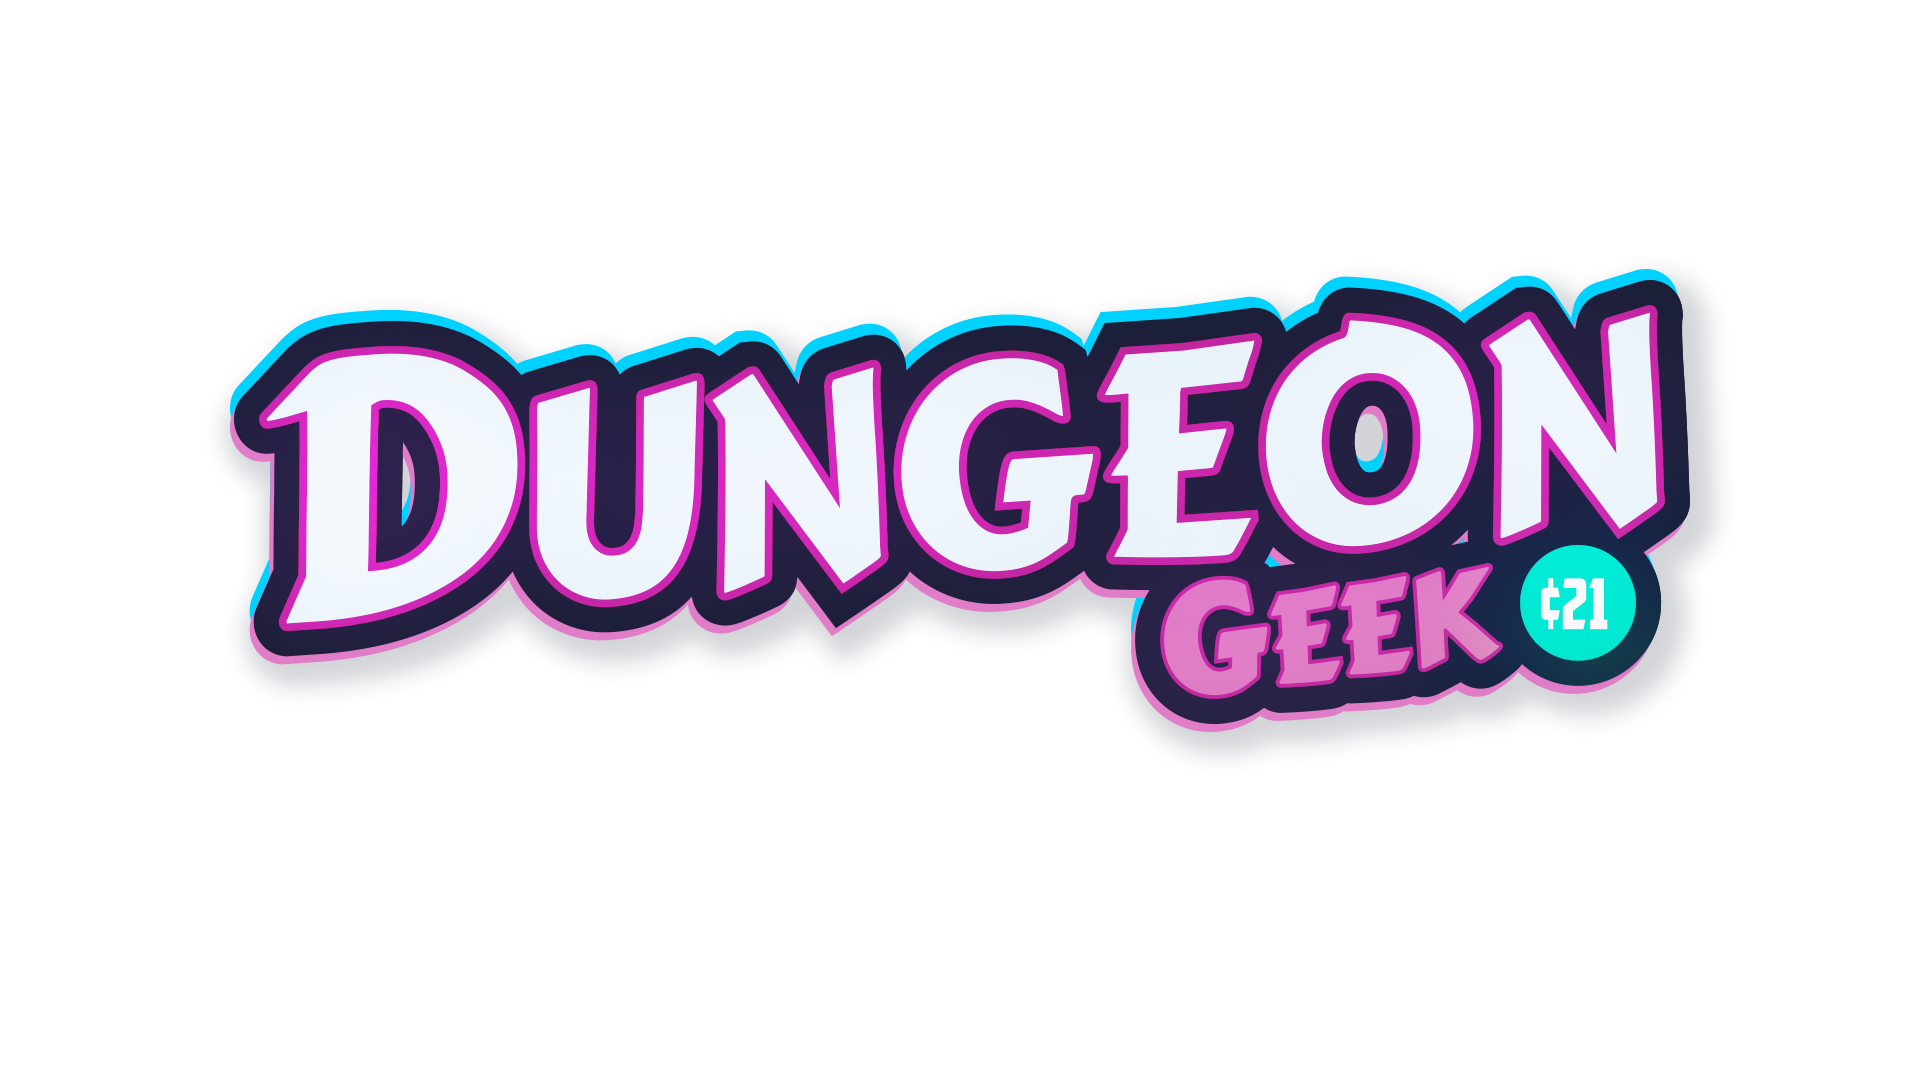 Dungeon Geek 21